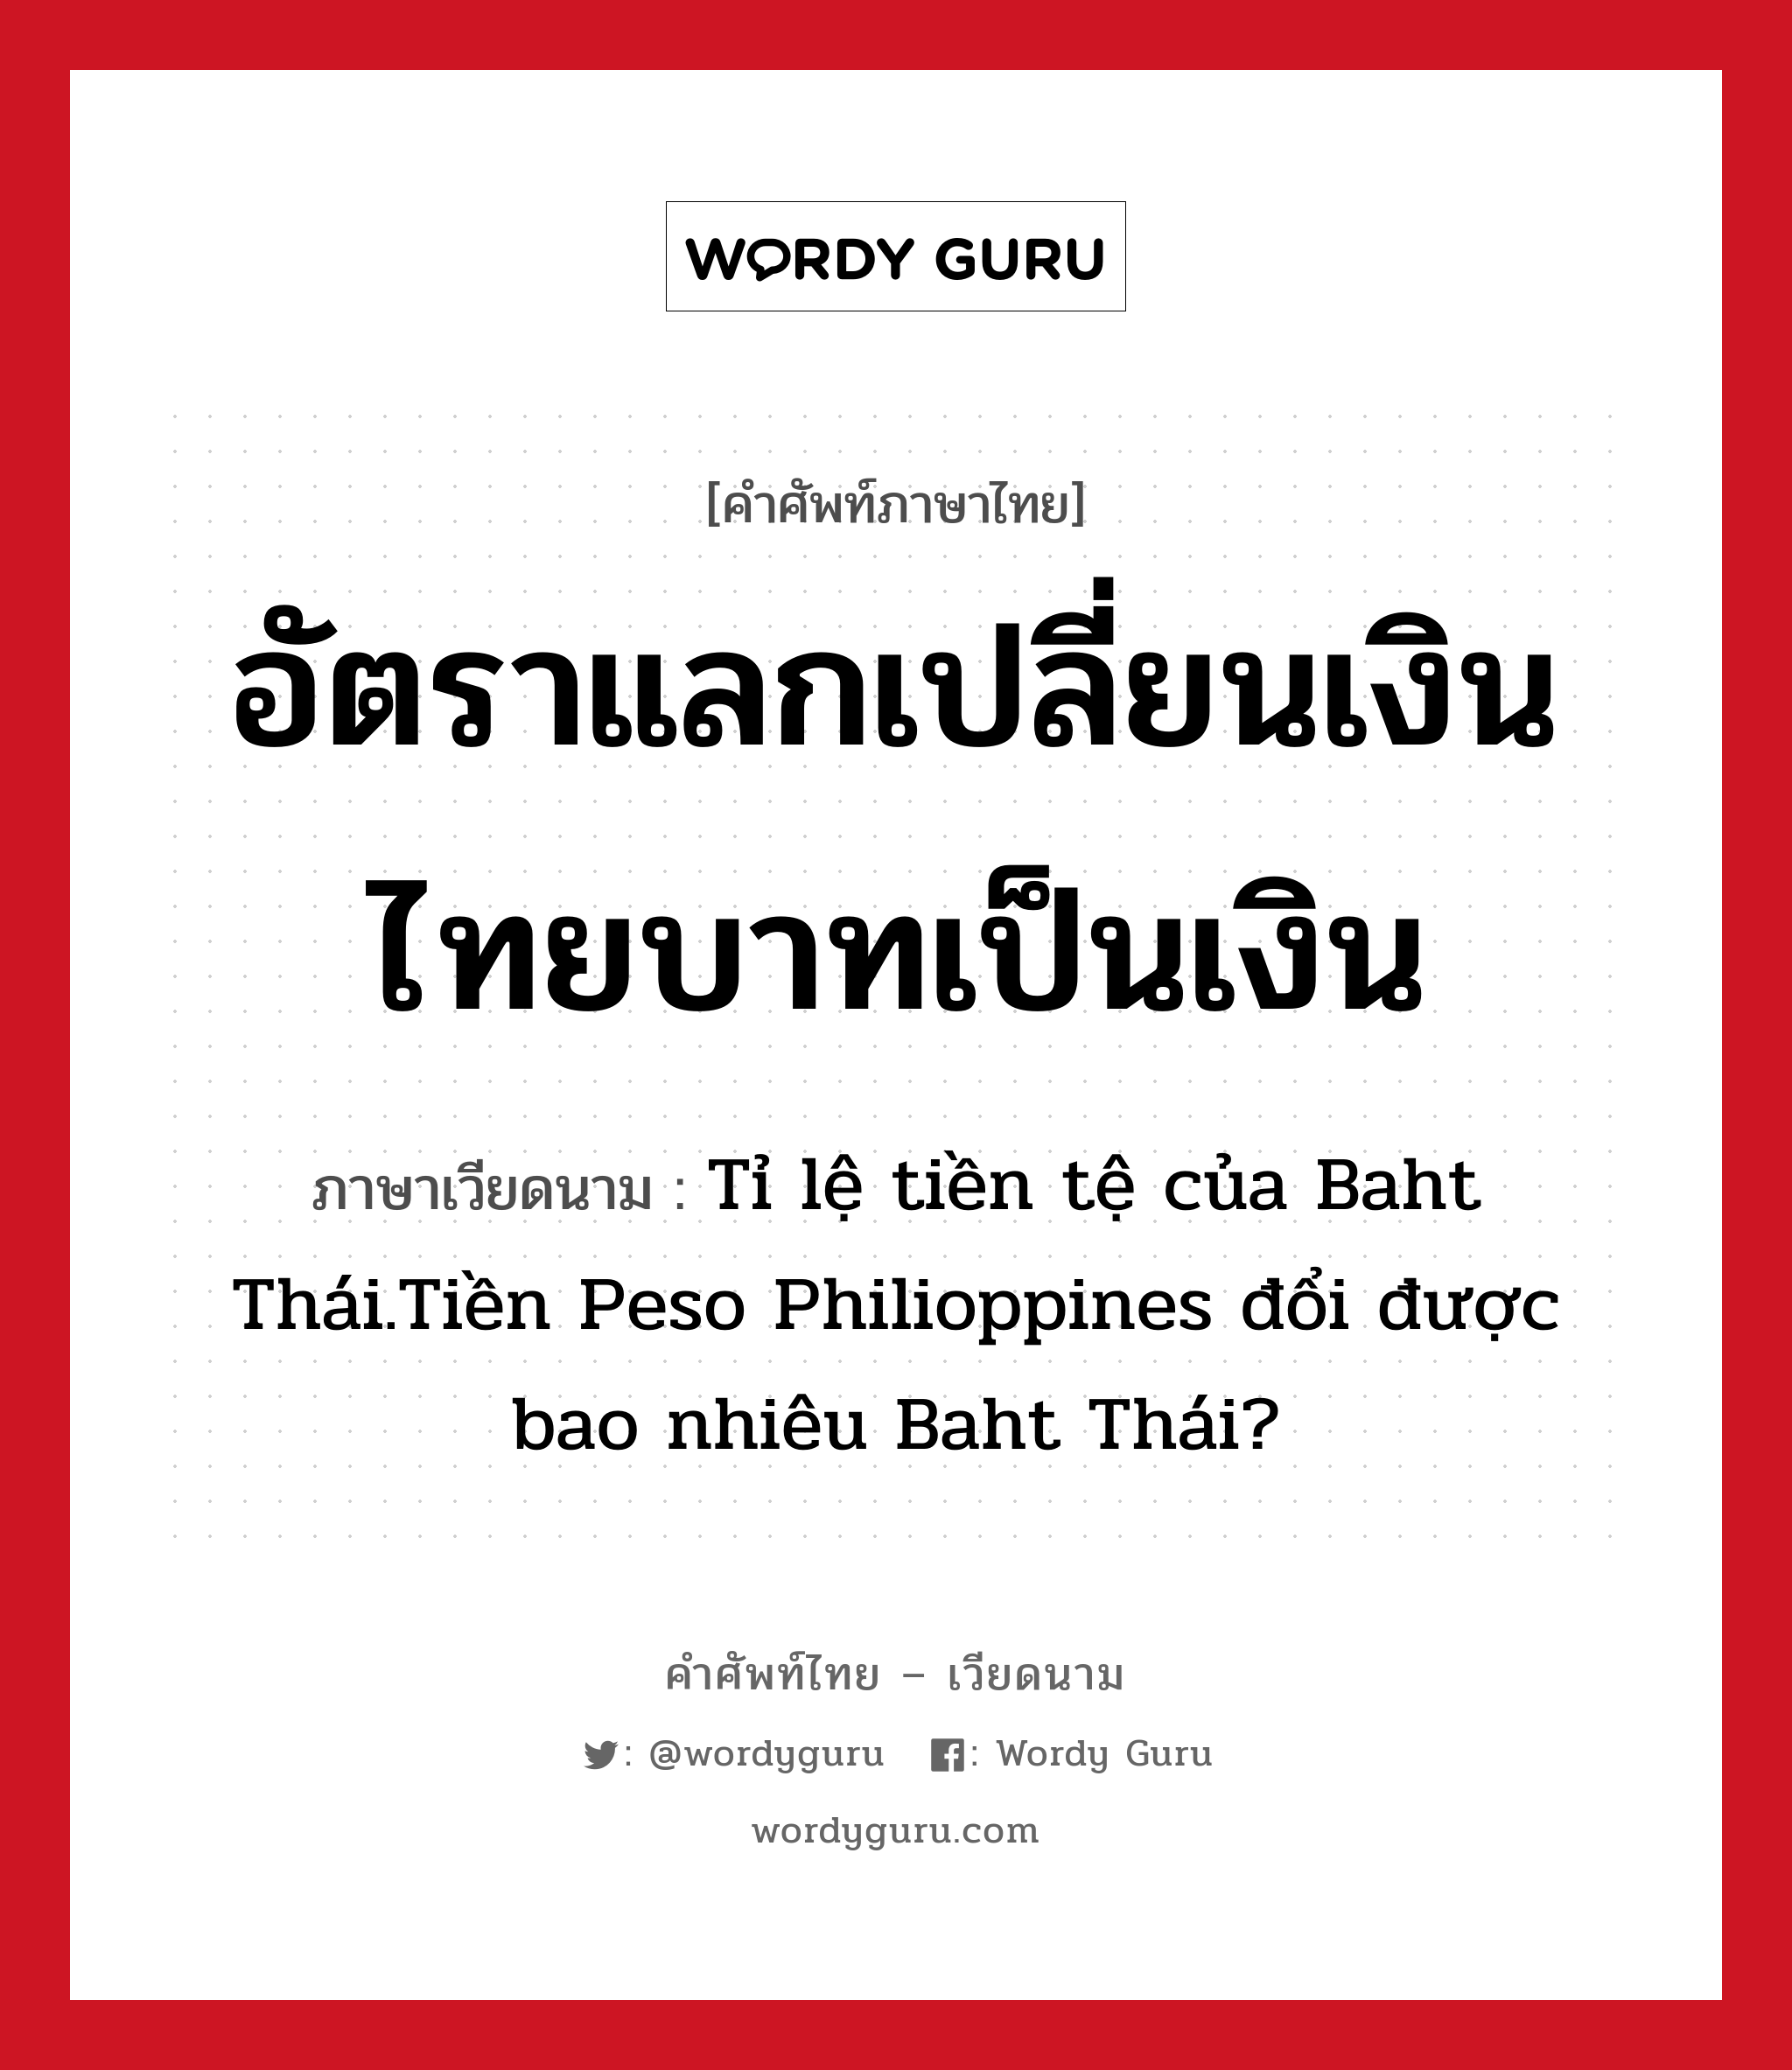 อัตราแลกเปลี่ยนเงินไทยบาทเป็นเงิน ภาษาเวียดนามคืออะไร, คำศัพท์ภาษาไทย - เวียดนาม อัตราแลกเปลี่ยนเงินไทยบาทเป็นเงิน ภาษาเวียดนาม Tỉ lệ tiền tệ của Baht Thái.Tiền Peso Philioppines đổi được bao nhiêu Baht Thái? หมวด การค้าขาย หมวด การค้าขาย